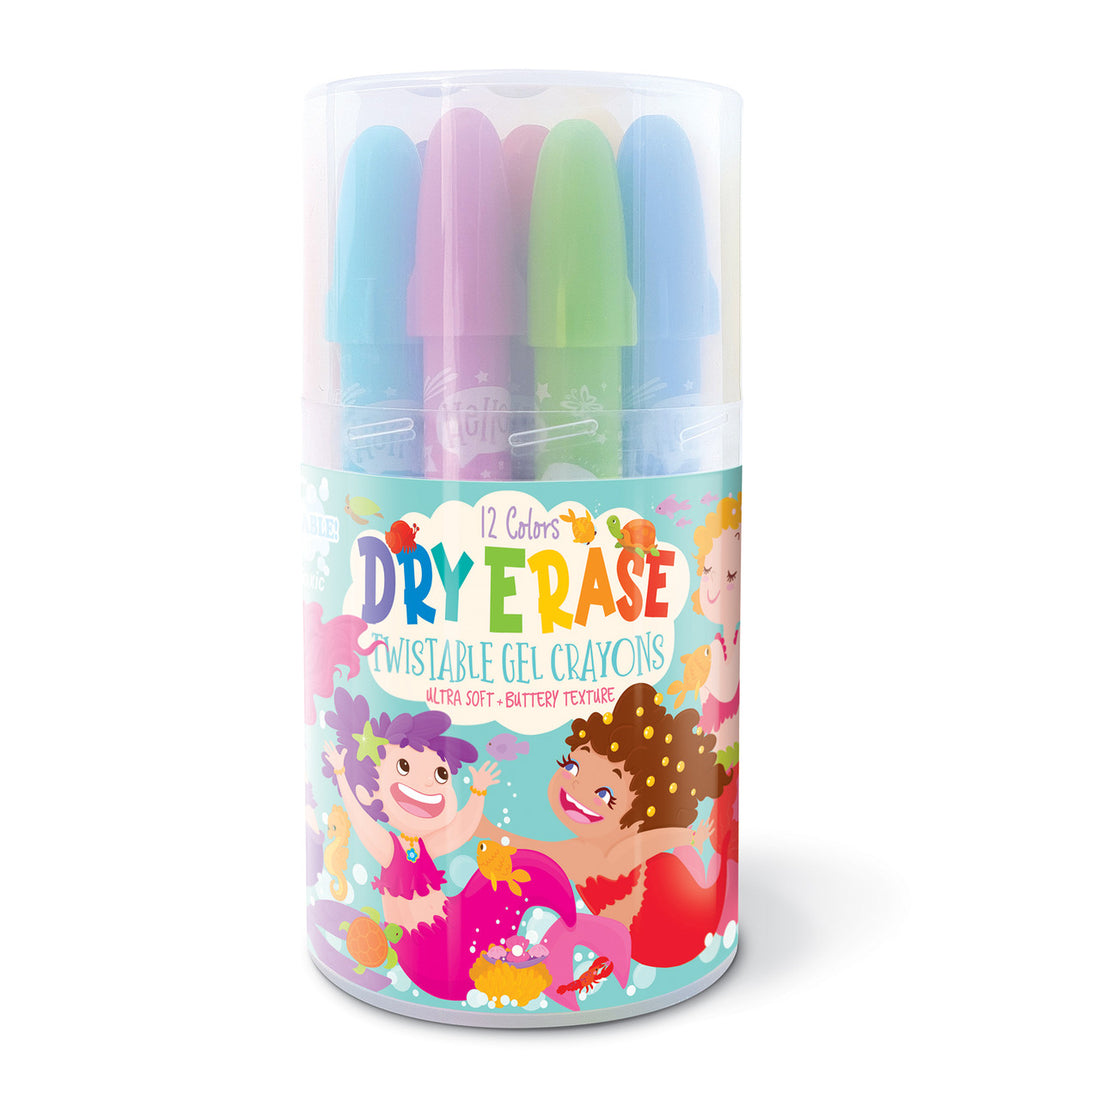 Dry Erase Twistable Gel Crayons | Magical Mermaids